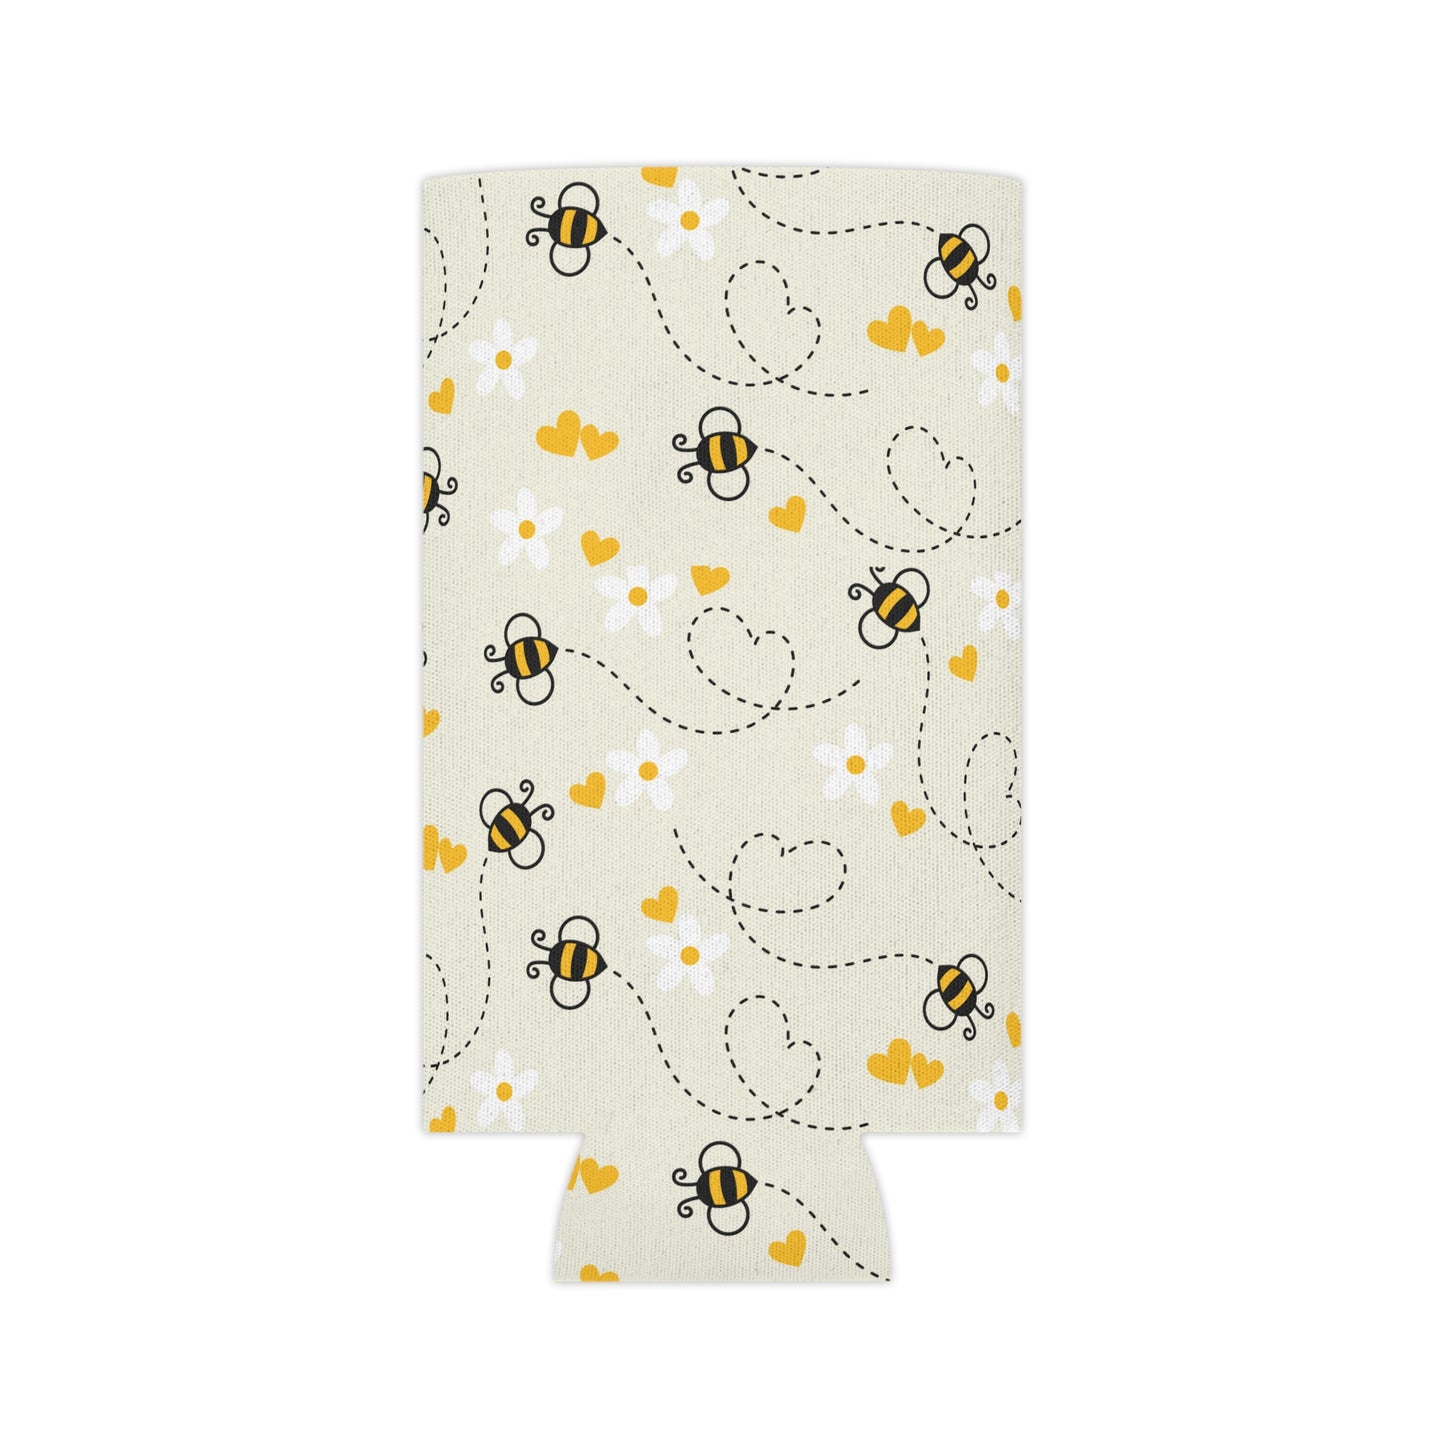 Summer Bee Can Cooler / Honey Bee Drink Sleeve